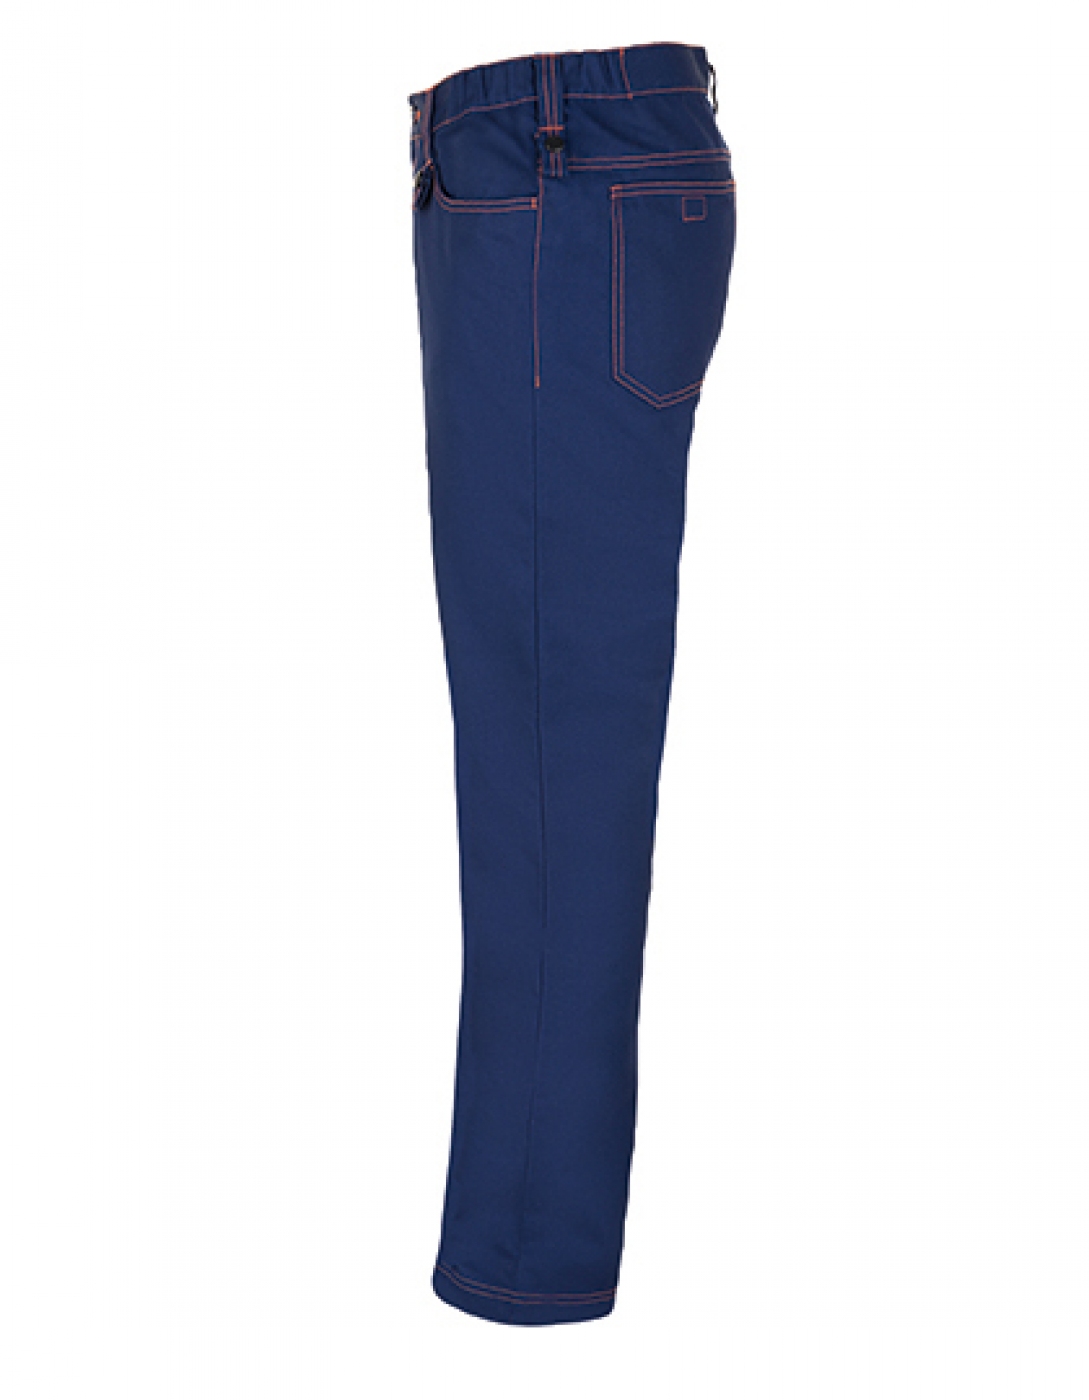 Uniforme Protectie â€“ Pantalon lucru barbat, tip jeans cu 5 buzunare din tercot